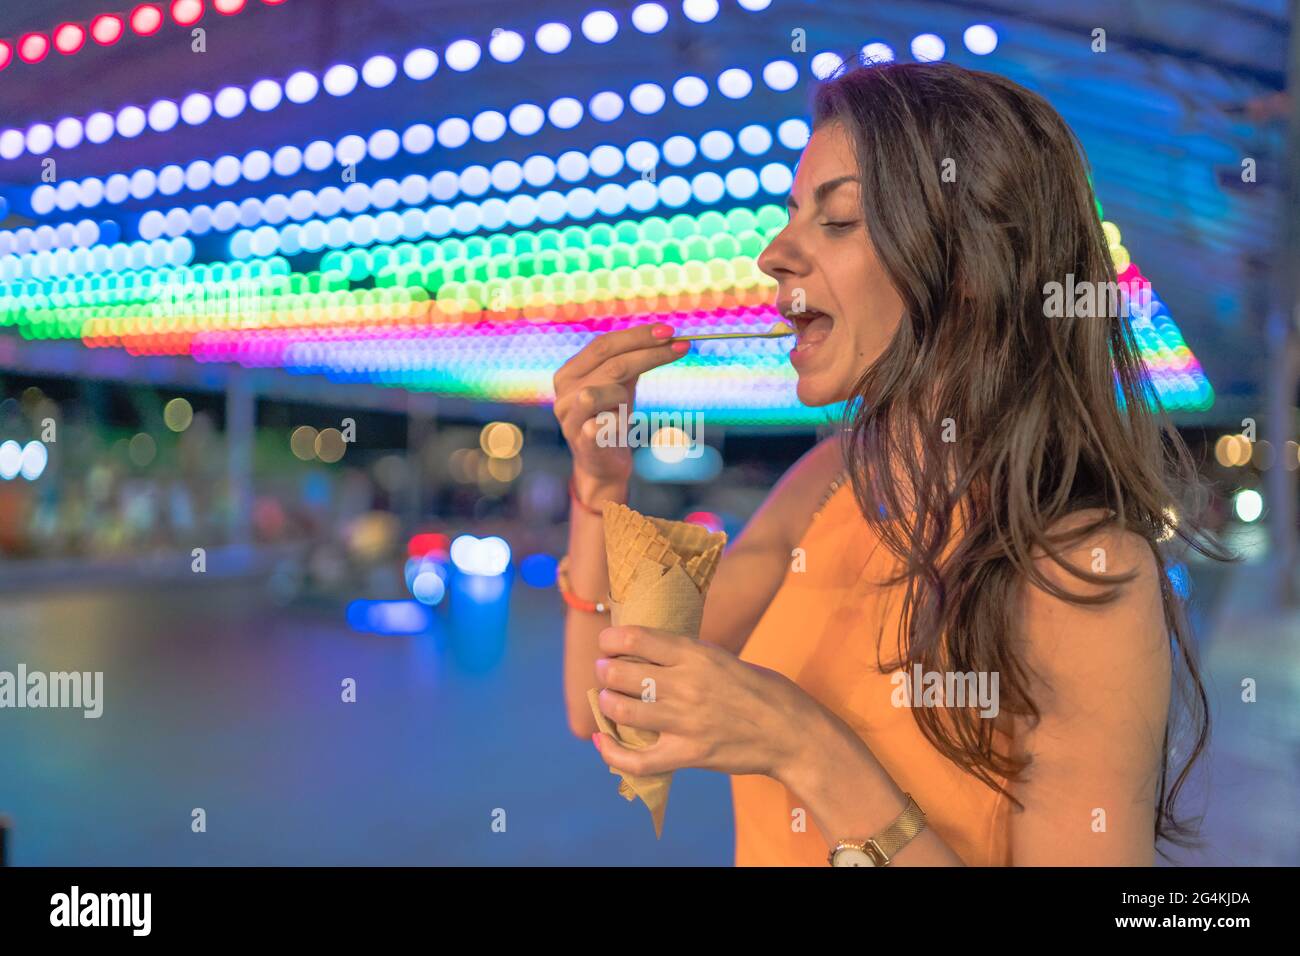 Nahaufnahme einer glücklichen, unbeschwerten jungen Frau, die mit geschlossenen Augen einen Bissen Eis vor verschwommenen, farbenfrohen Karnevalslichtern nimmt Stockfoto